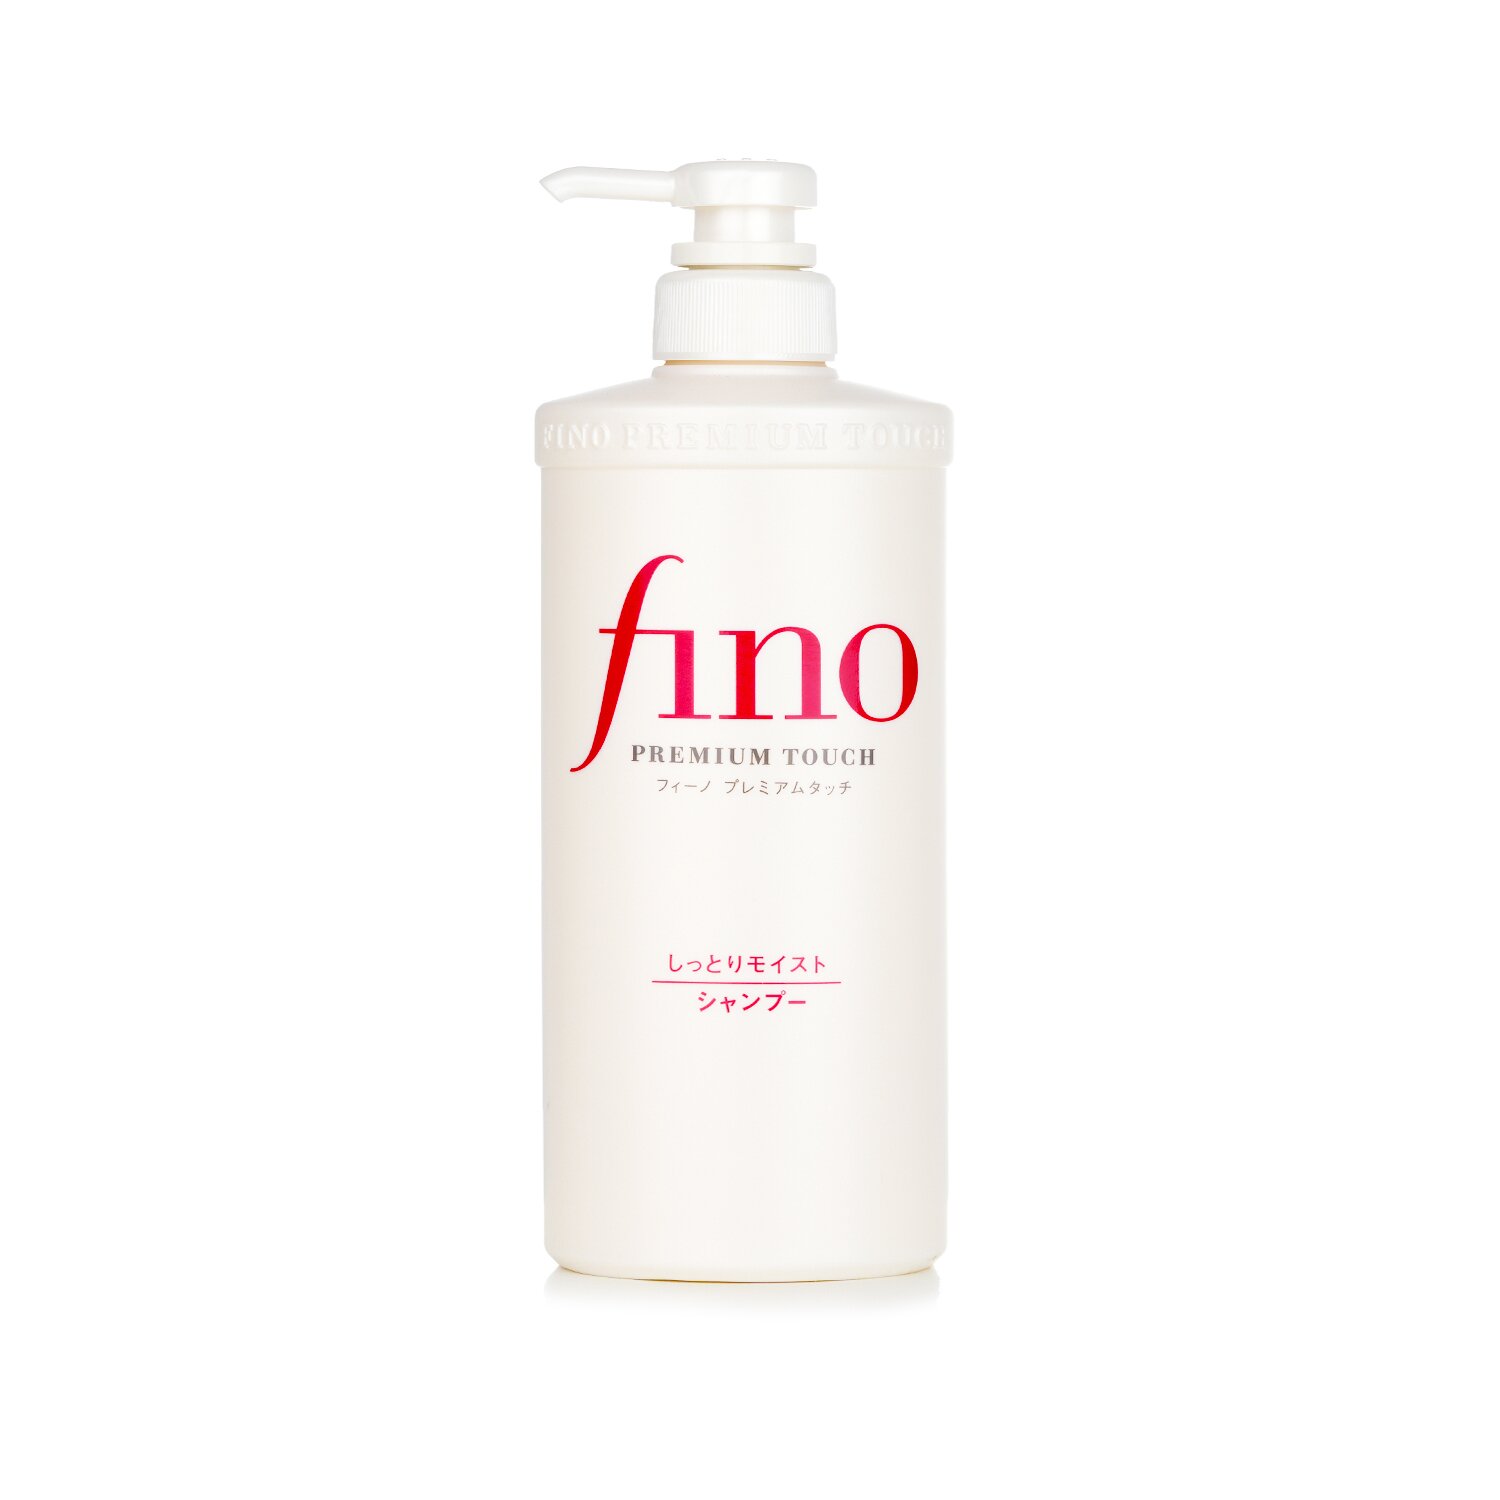 資生堂 Shiseido - Fino 高效滲透修復洗髮露